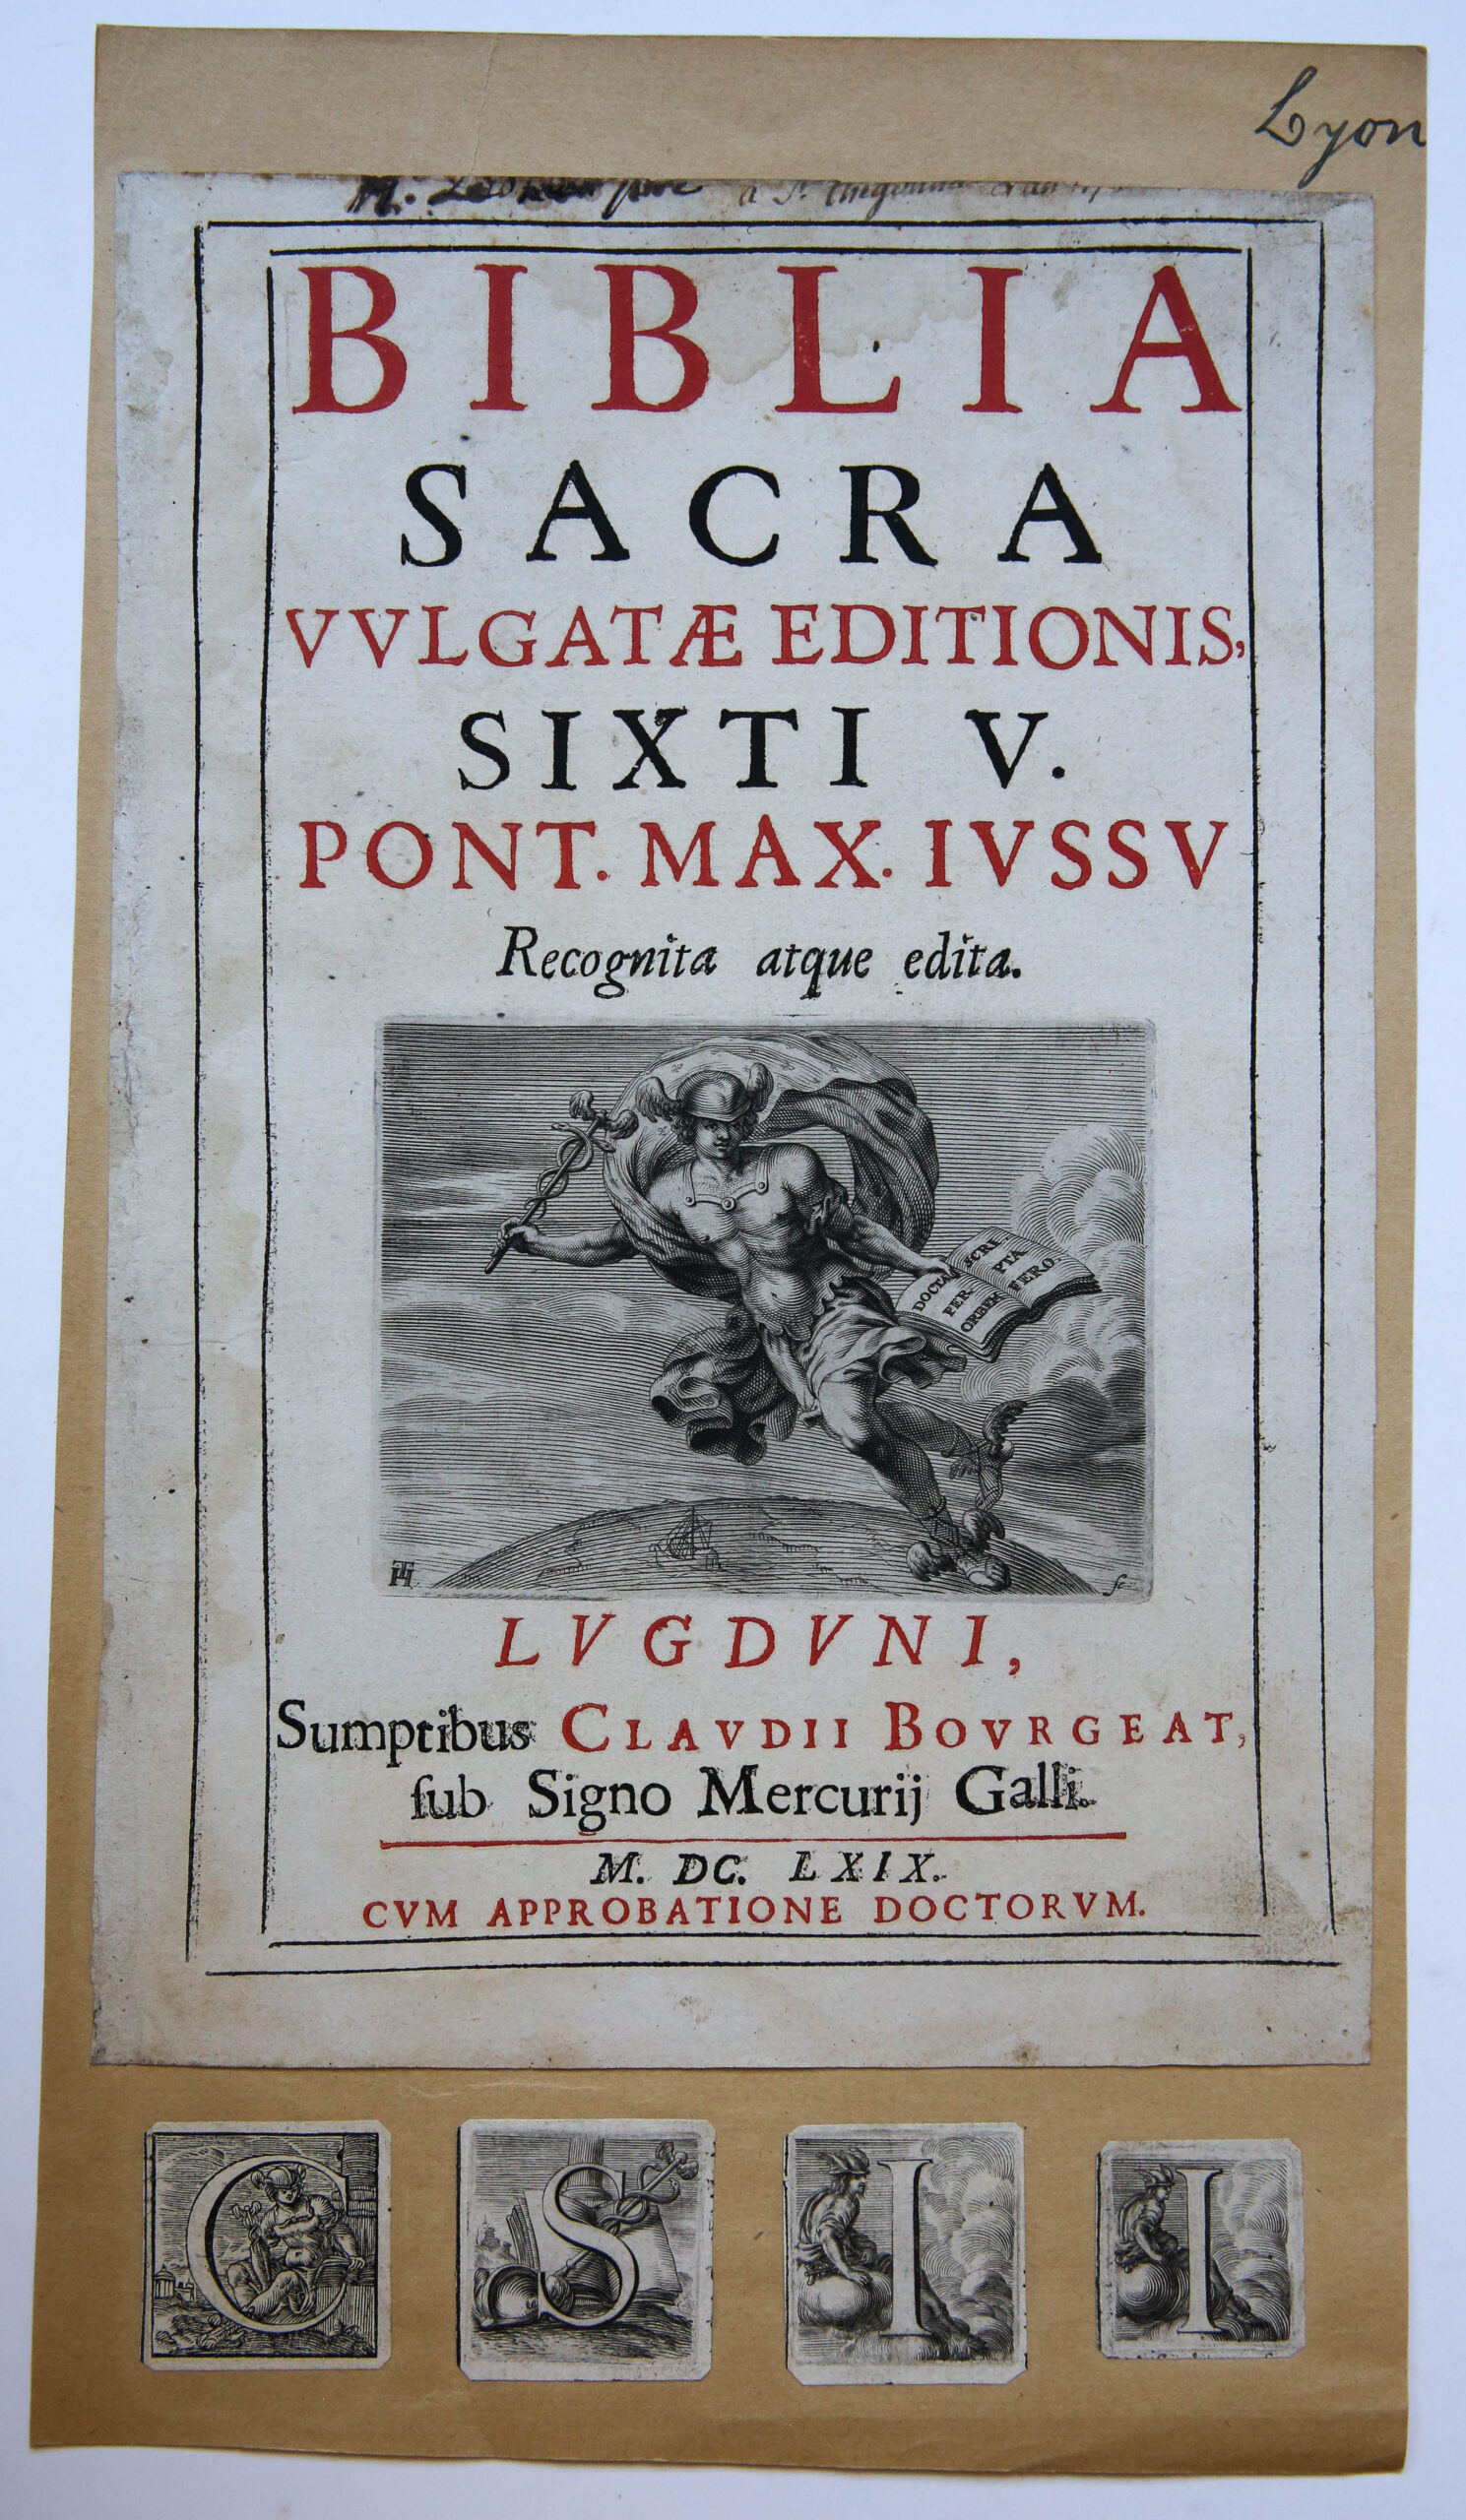 Print: Biblia Sacra [title page] 1669, Lyon/Titelpagina Bijbel.